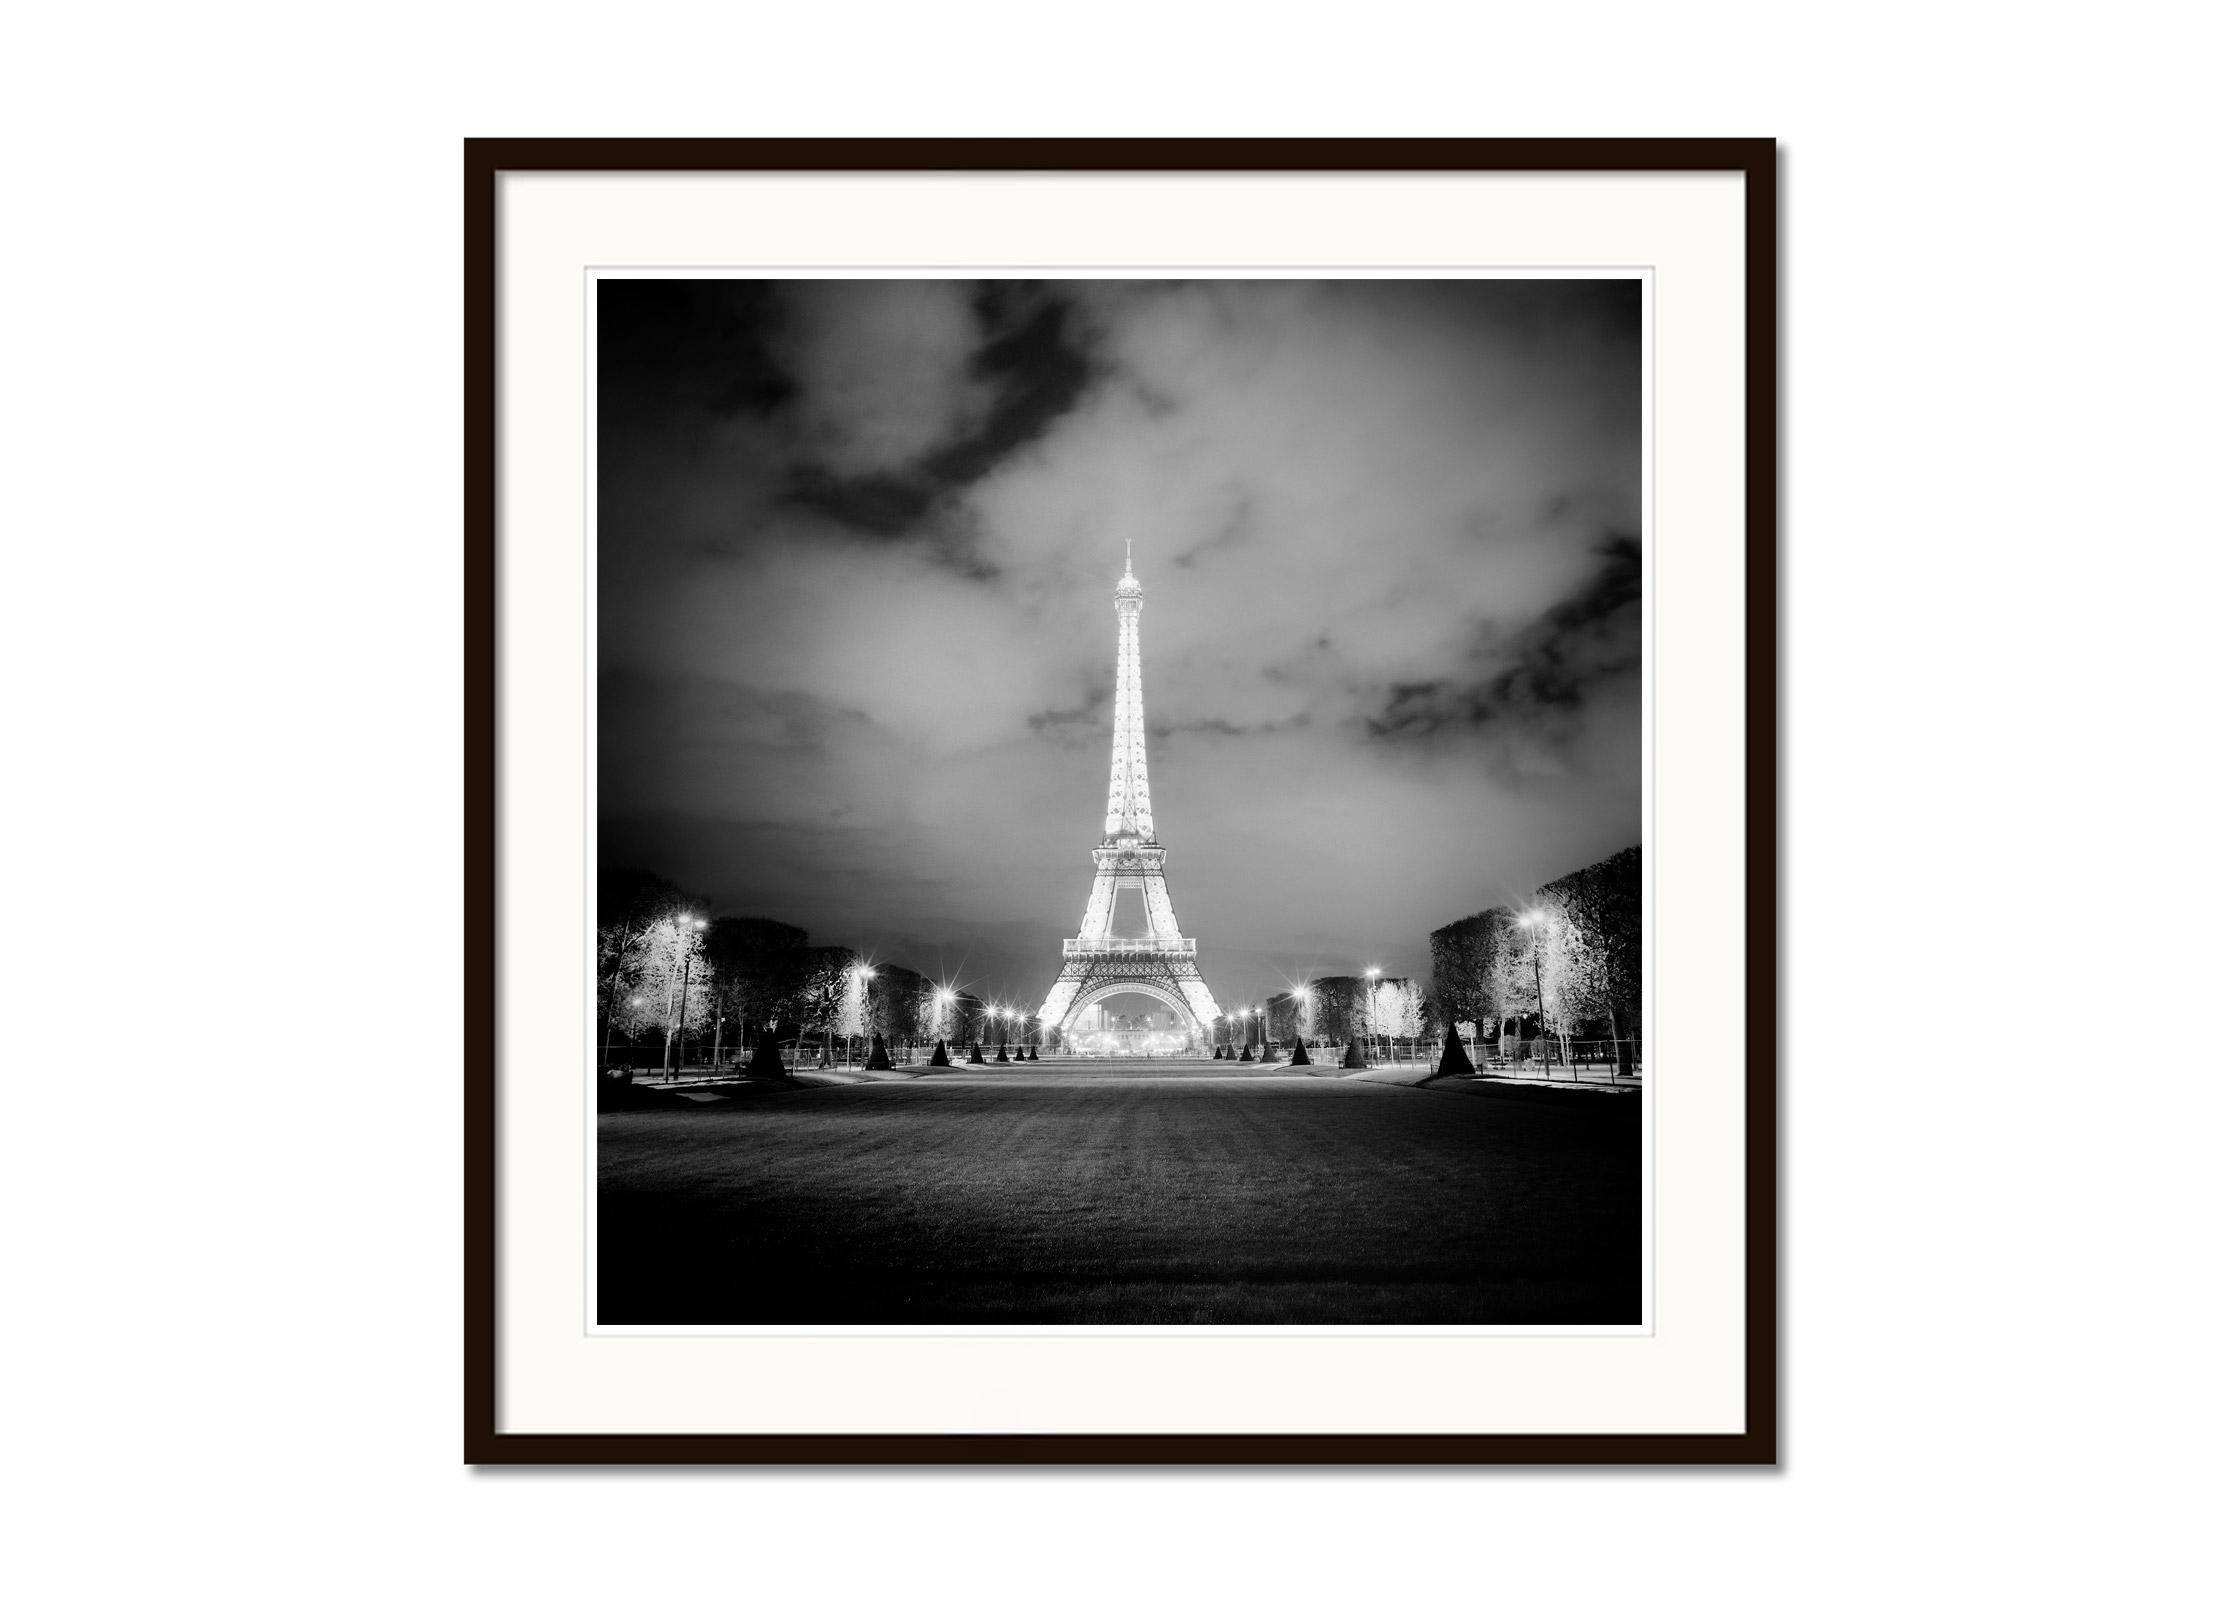 Schwarz-Weiß-Fotografie von Stadtbildern und Landschaften bei Nacht. Eiffelturm bei Nacht mit Lichtshow, Paris, Frankreich. Pigmenttintendruck, Auflage 9, signiert, betitelt, datiert und nummeriert vom Künstler. Mit Echtheitszertifikat. Bedruckt mit